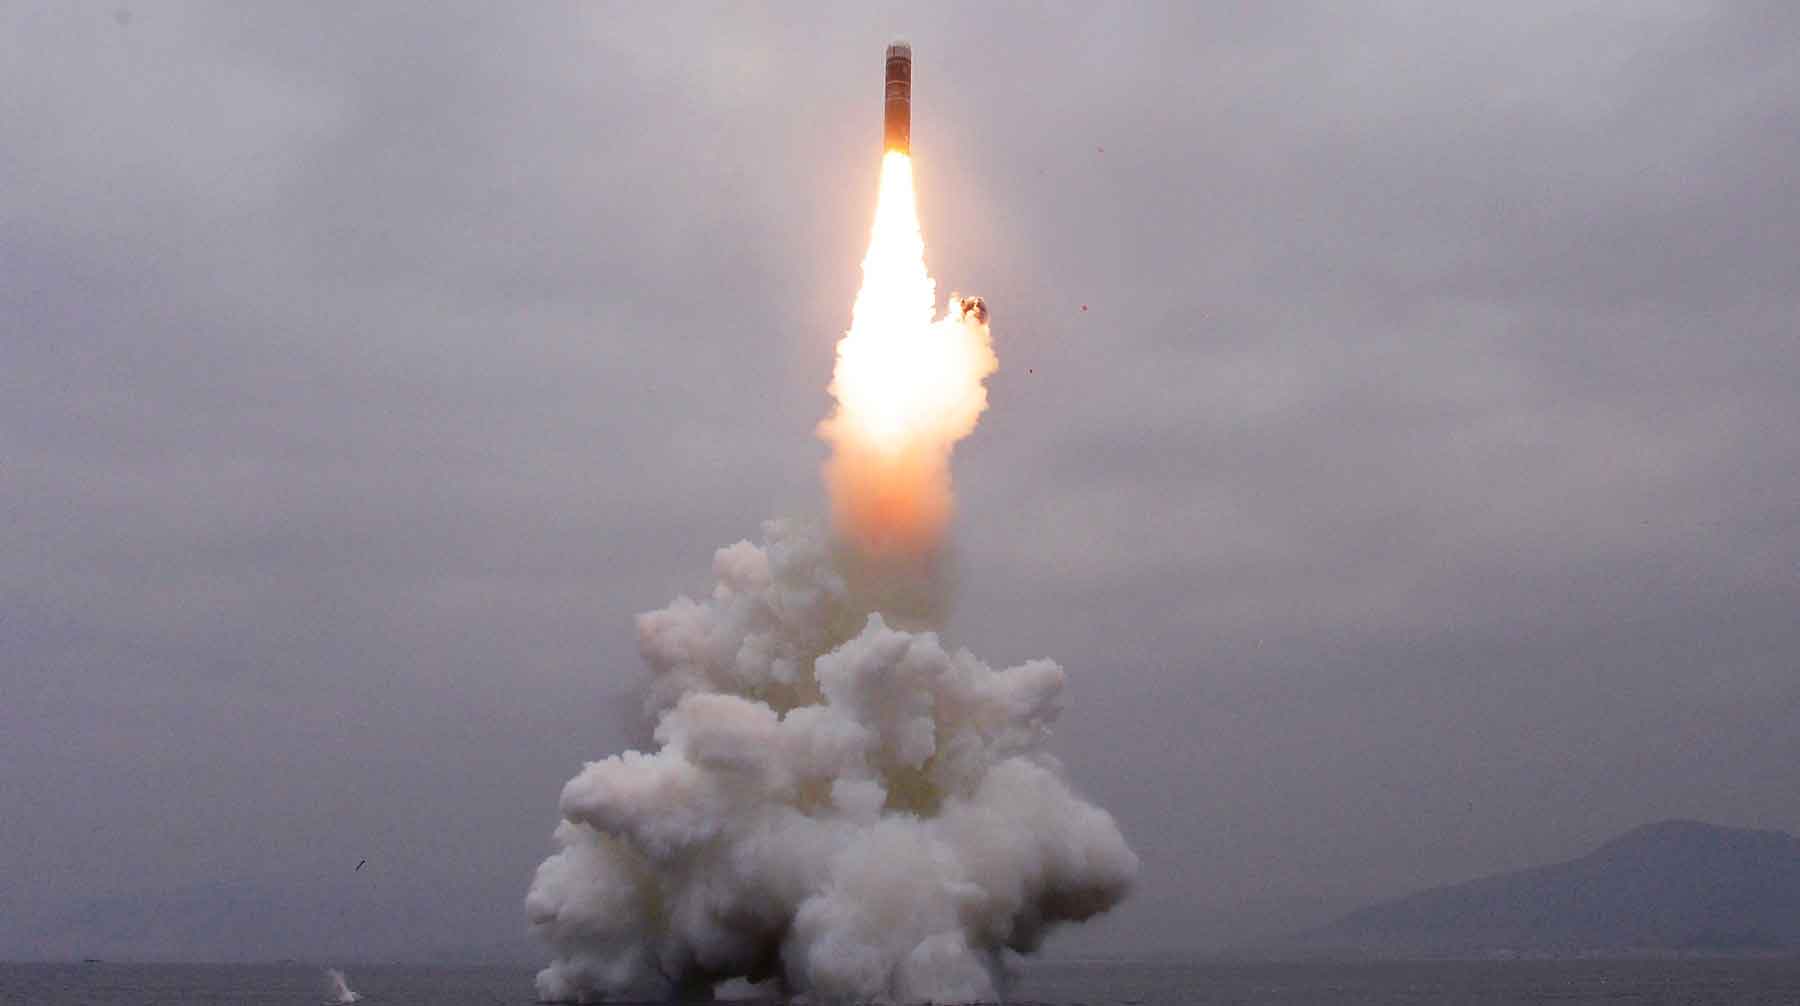 Ранее Япония и Южная Корея сообщили, что северокорейская ракета достигла высоты 910 километров Фото: © GLOBAL LOOK press / Chao Zhongshe